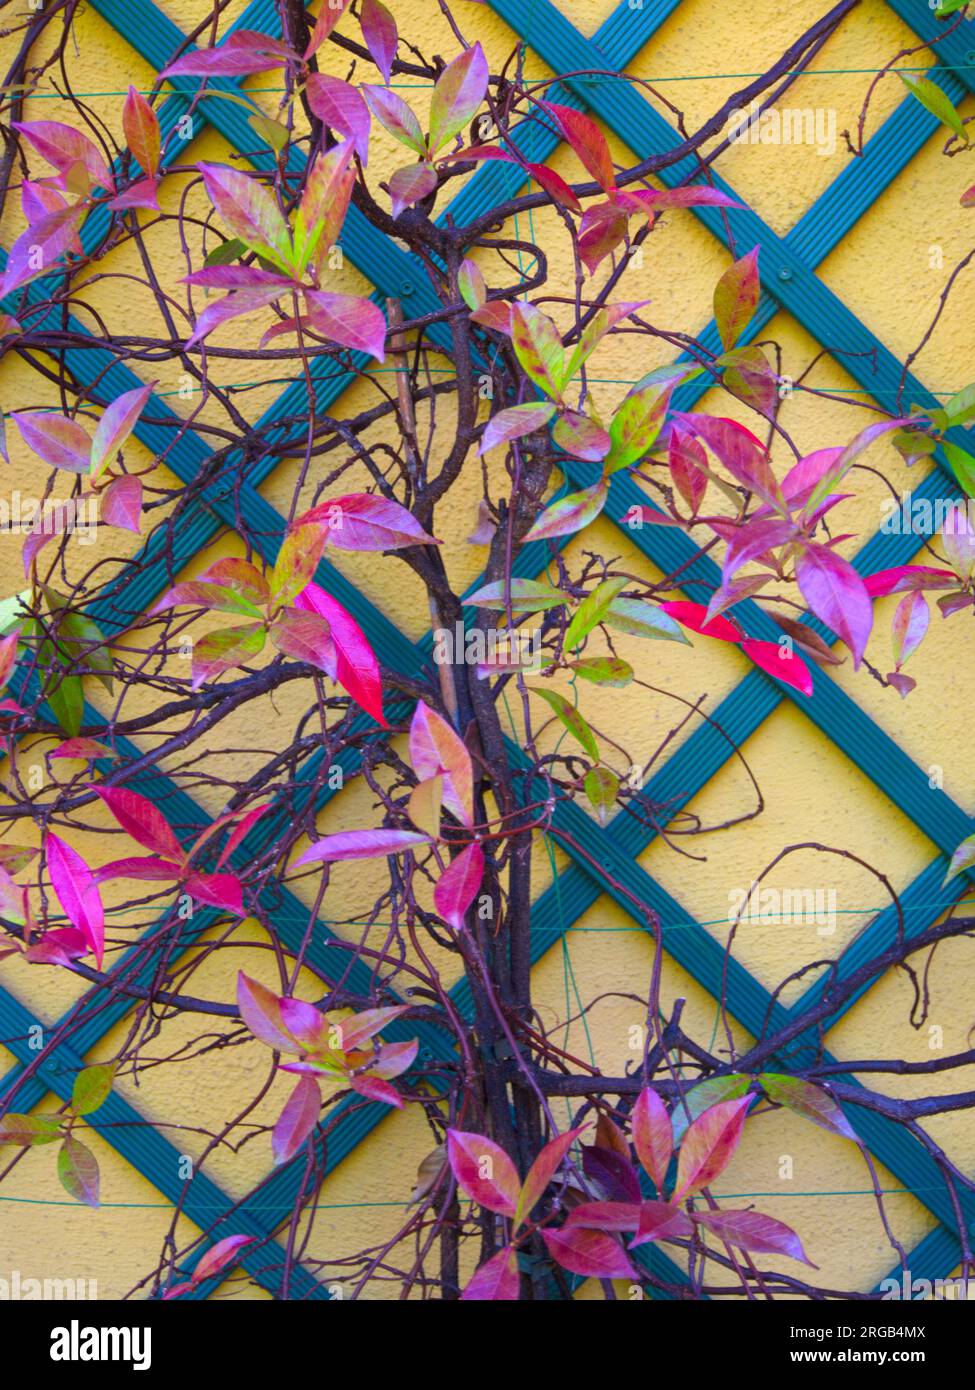 A plant with colorful leaves climbs up the garden wall of a house.Una planta de hojas coloridas se trepa por la pared del jardín de una casa Stock Photo